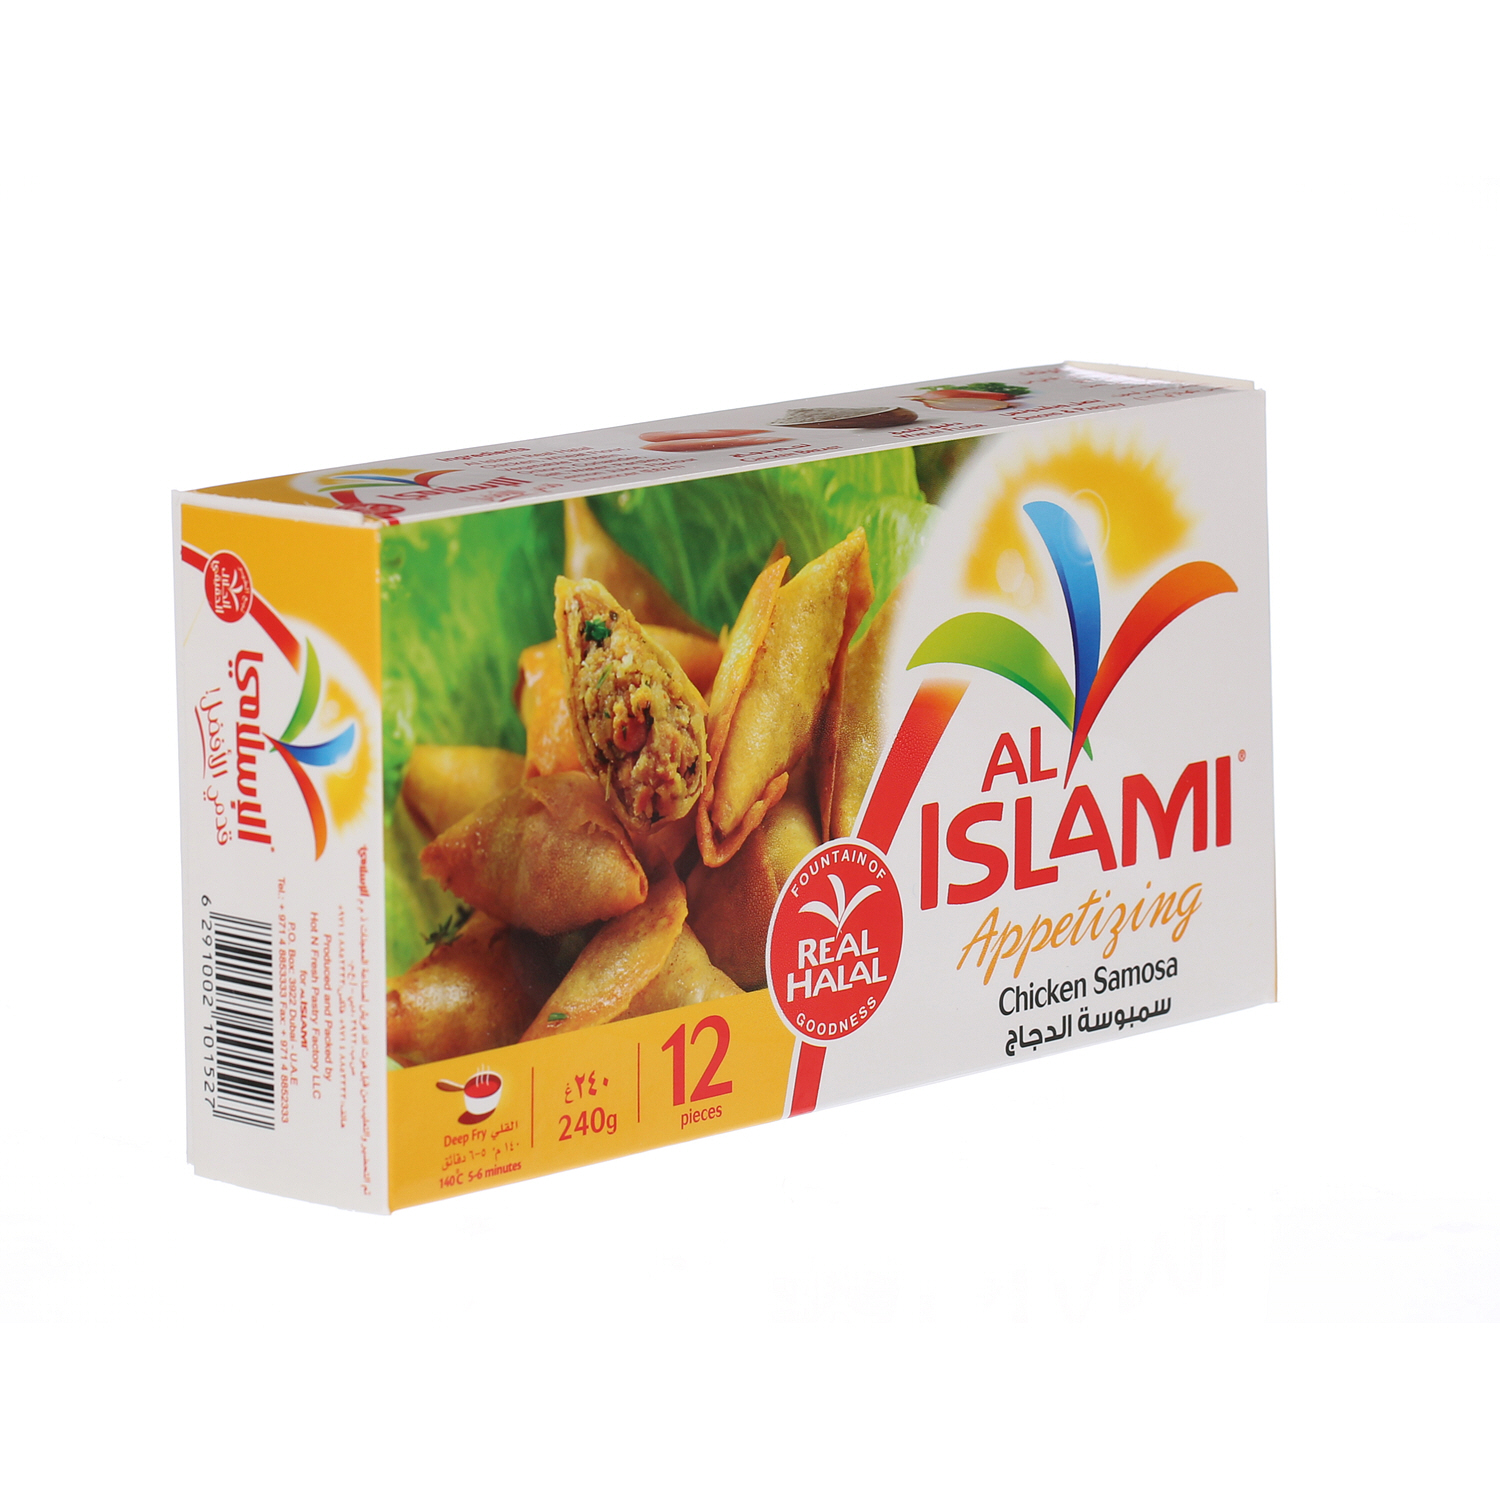 Al Islami Chicken Samosa 240 g